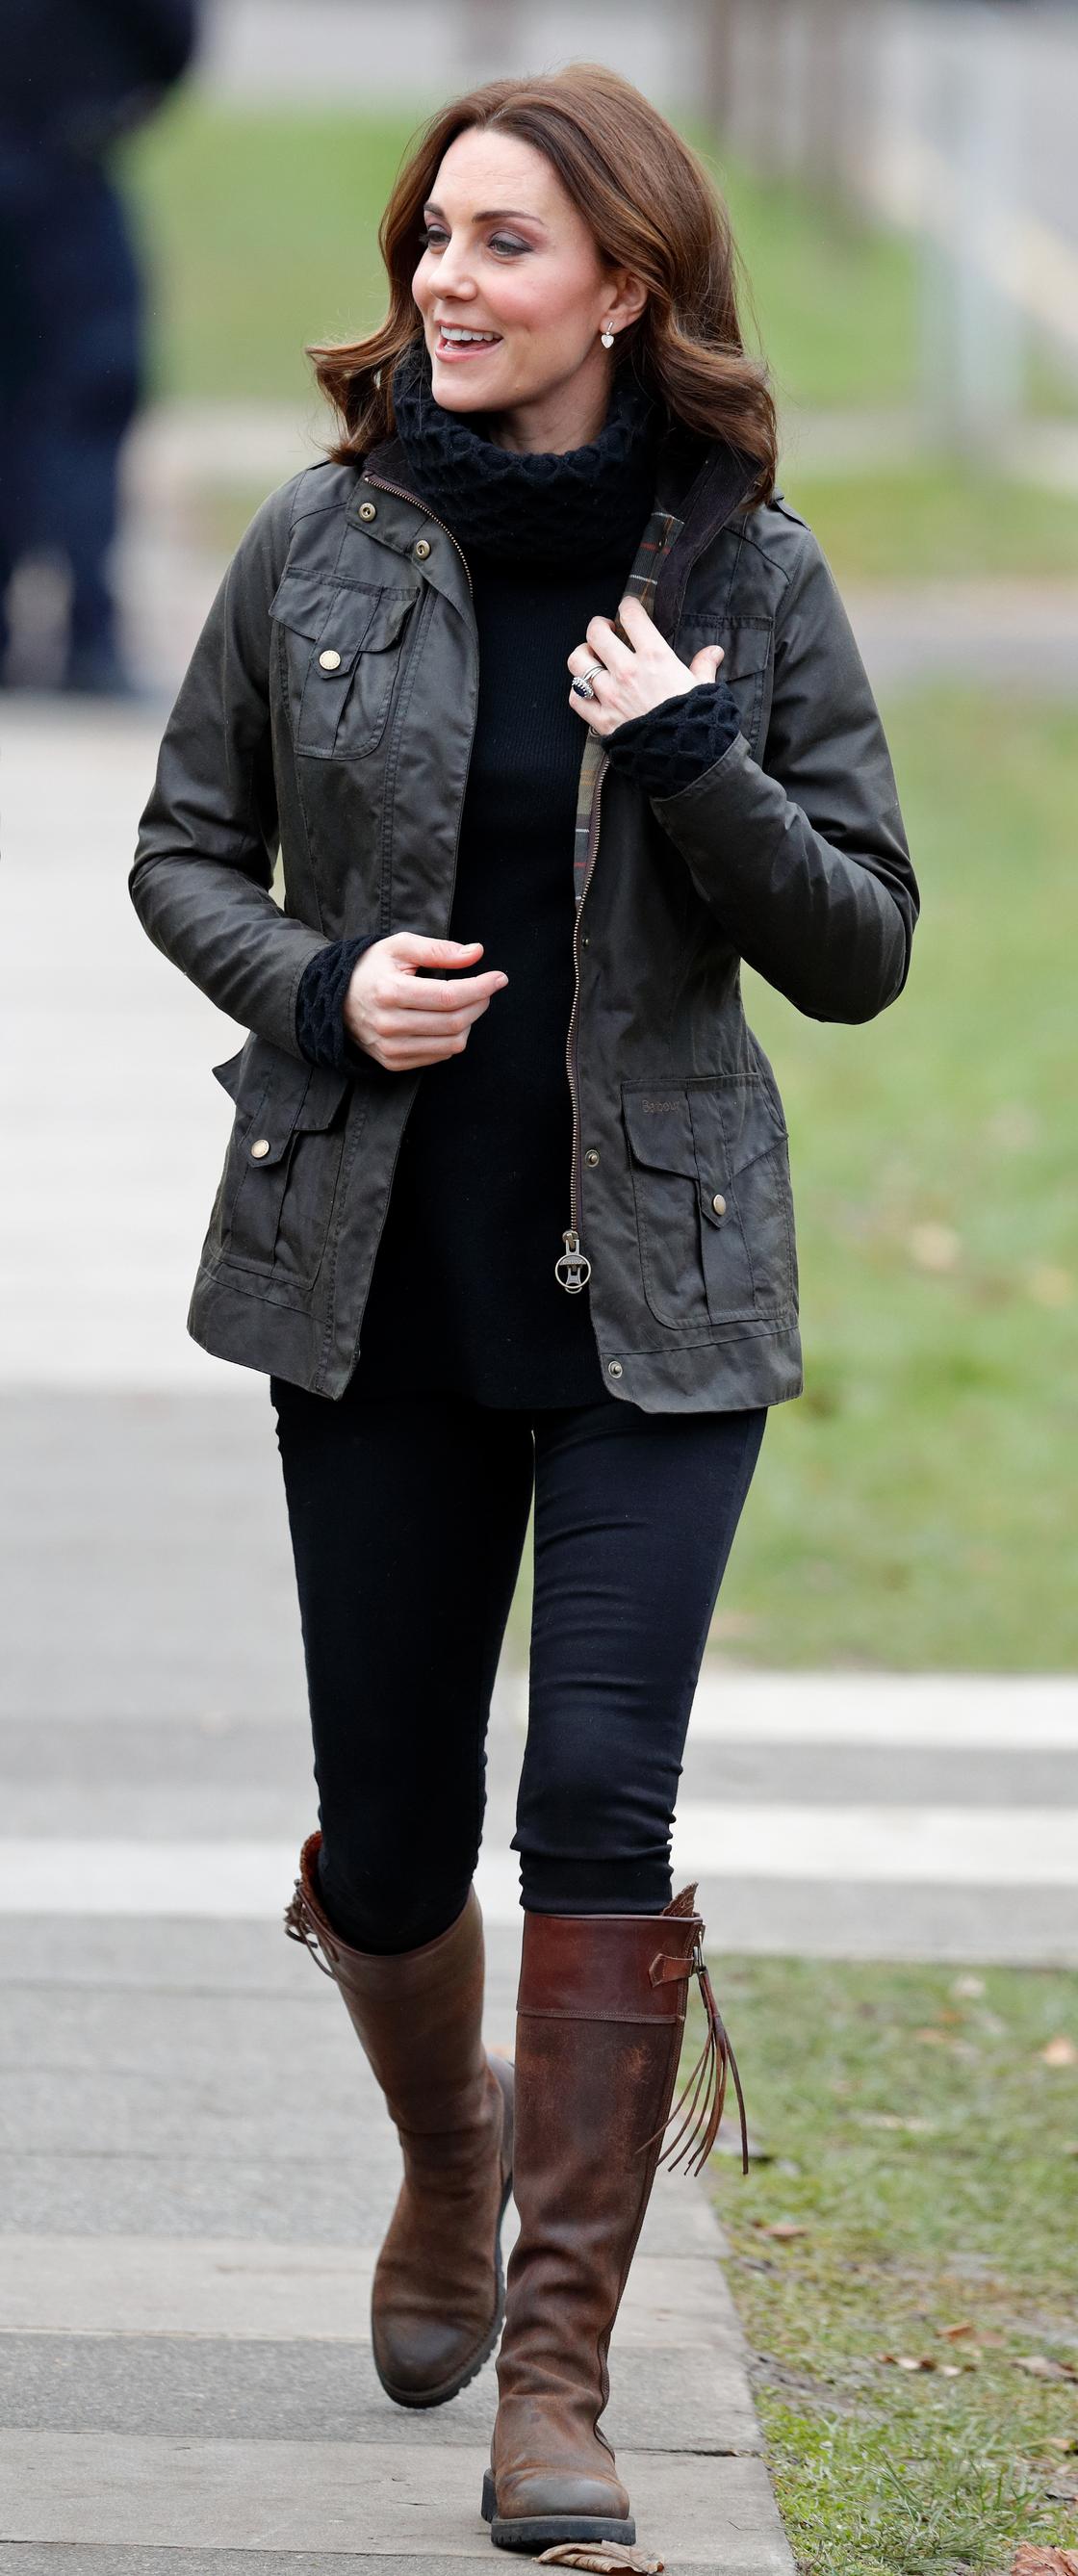 Кейт Миддлтон в знаменитых сапогах в 2017 году